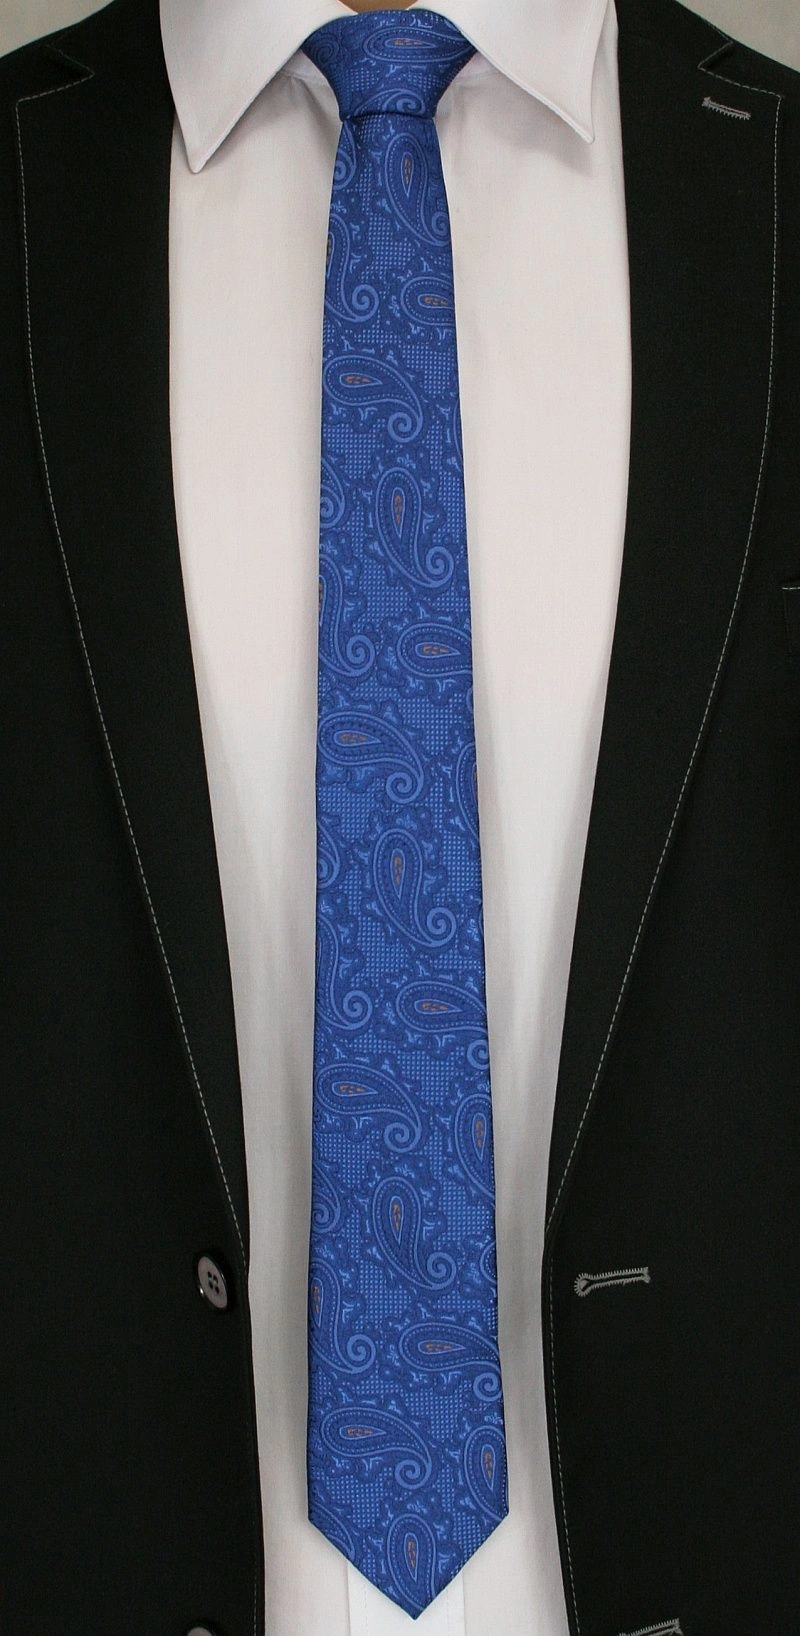 Modny i Elegancki Krawat Alties - Niebieski w Duży Wzór Paisley